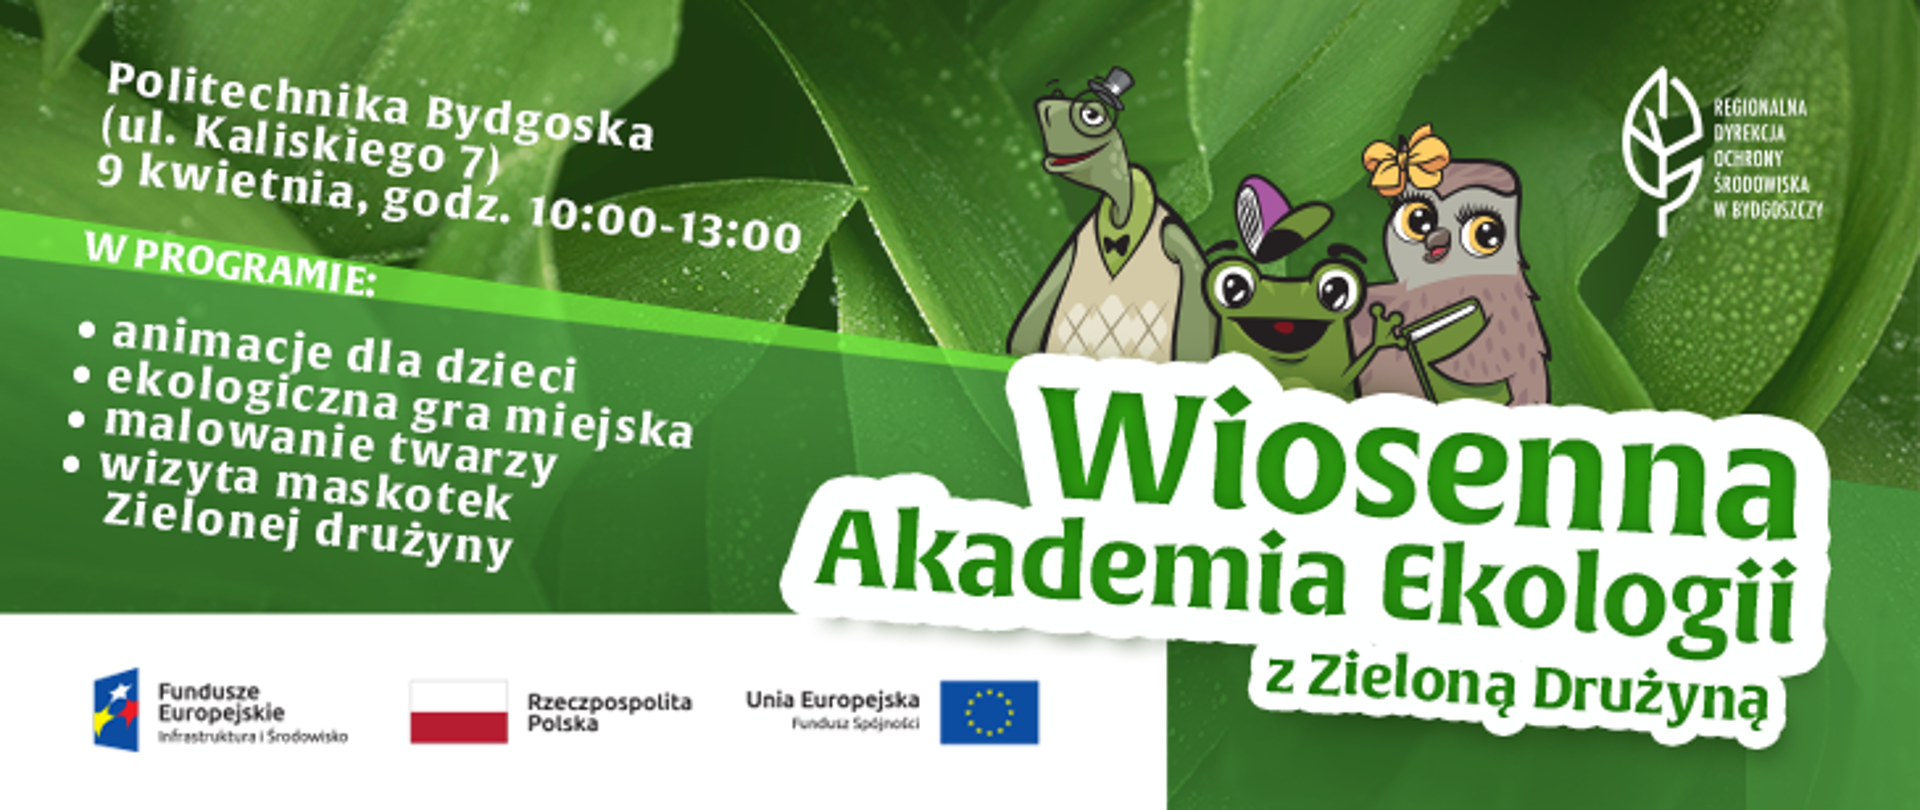 Już w najbliższą sobotę zapraszamy wszystkich do Wiosennej Akademii Ekologii, która odbędzie się na Politechnice Bydgoskiej, przy ul. Kaliskiego 7, w godzinach od 10:00 do 13:00.